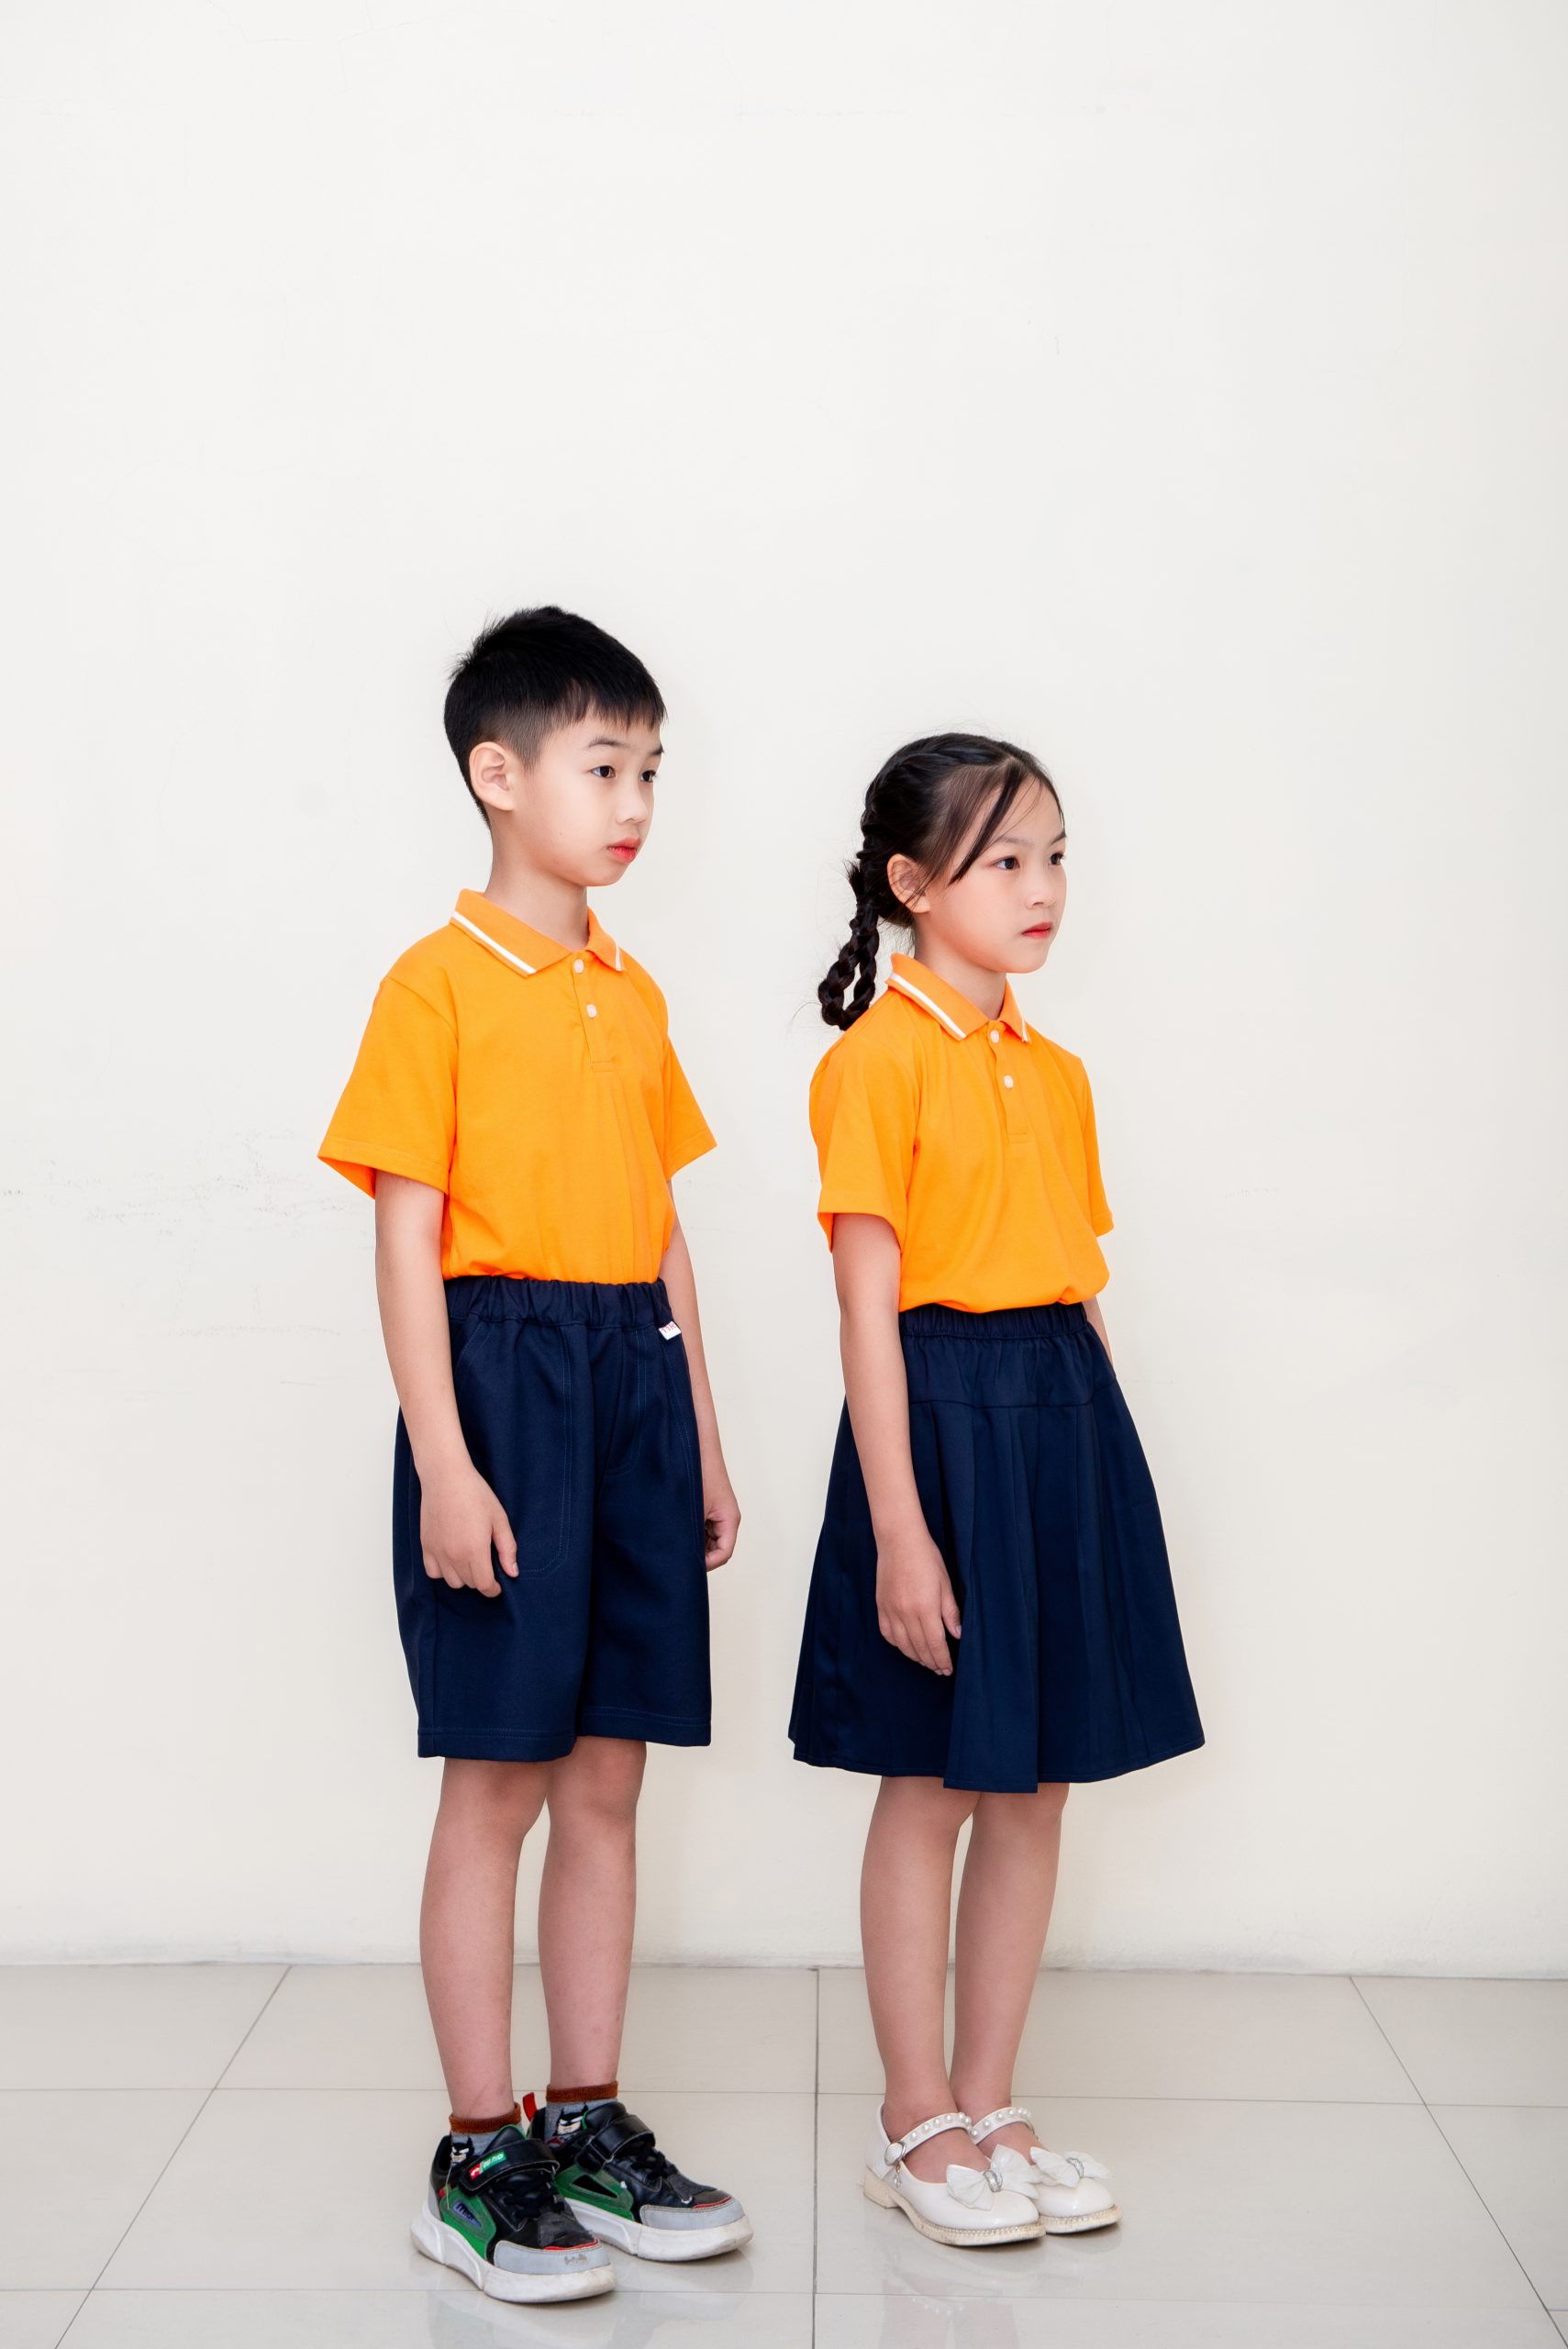 Đầm cực xinh cho bé gái 9 tuổi - Thời Trang Daily